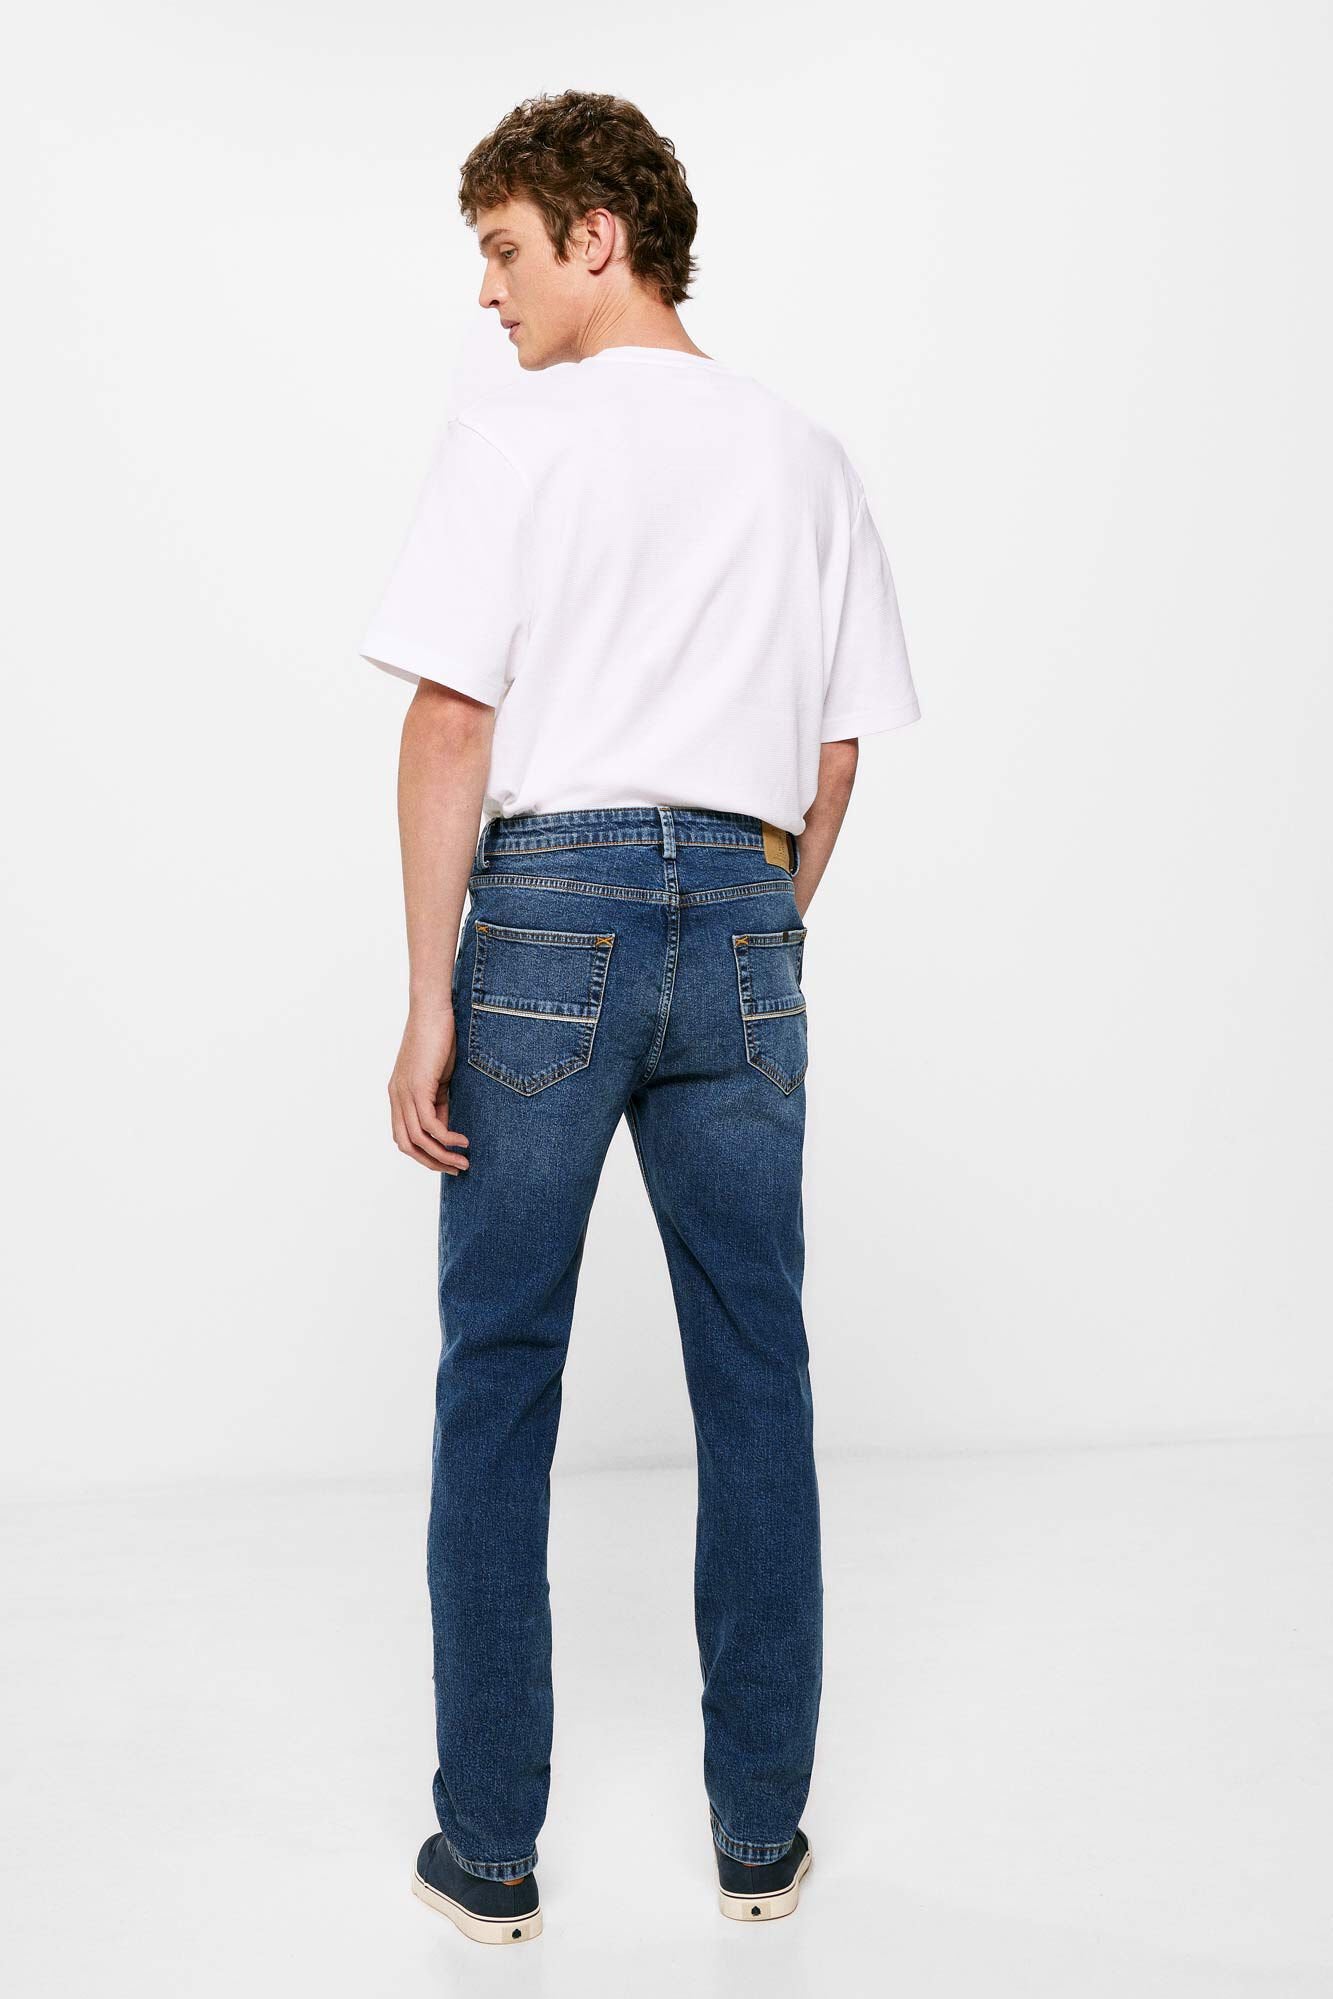 Medium Wash Slim Fit Jeans_1757525_11_03